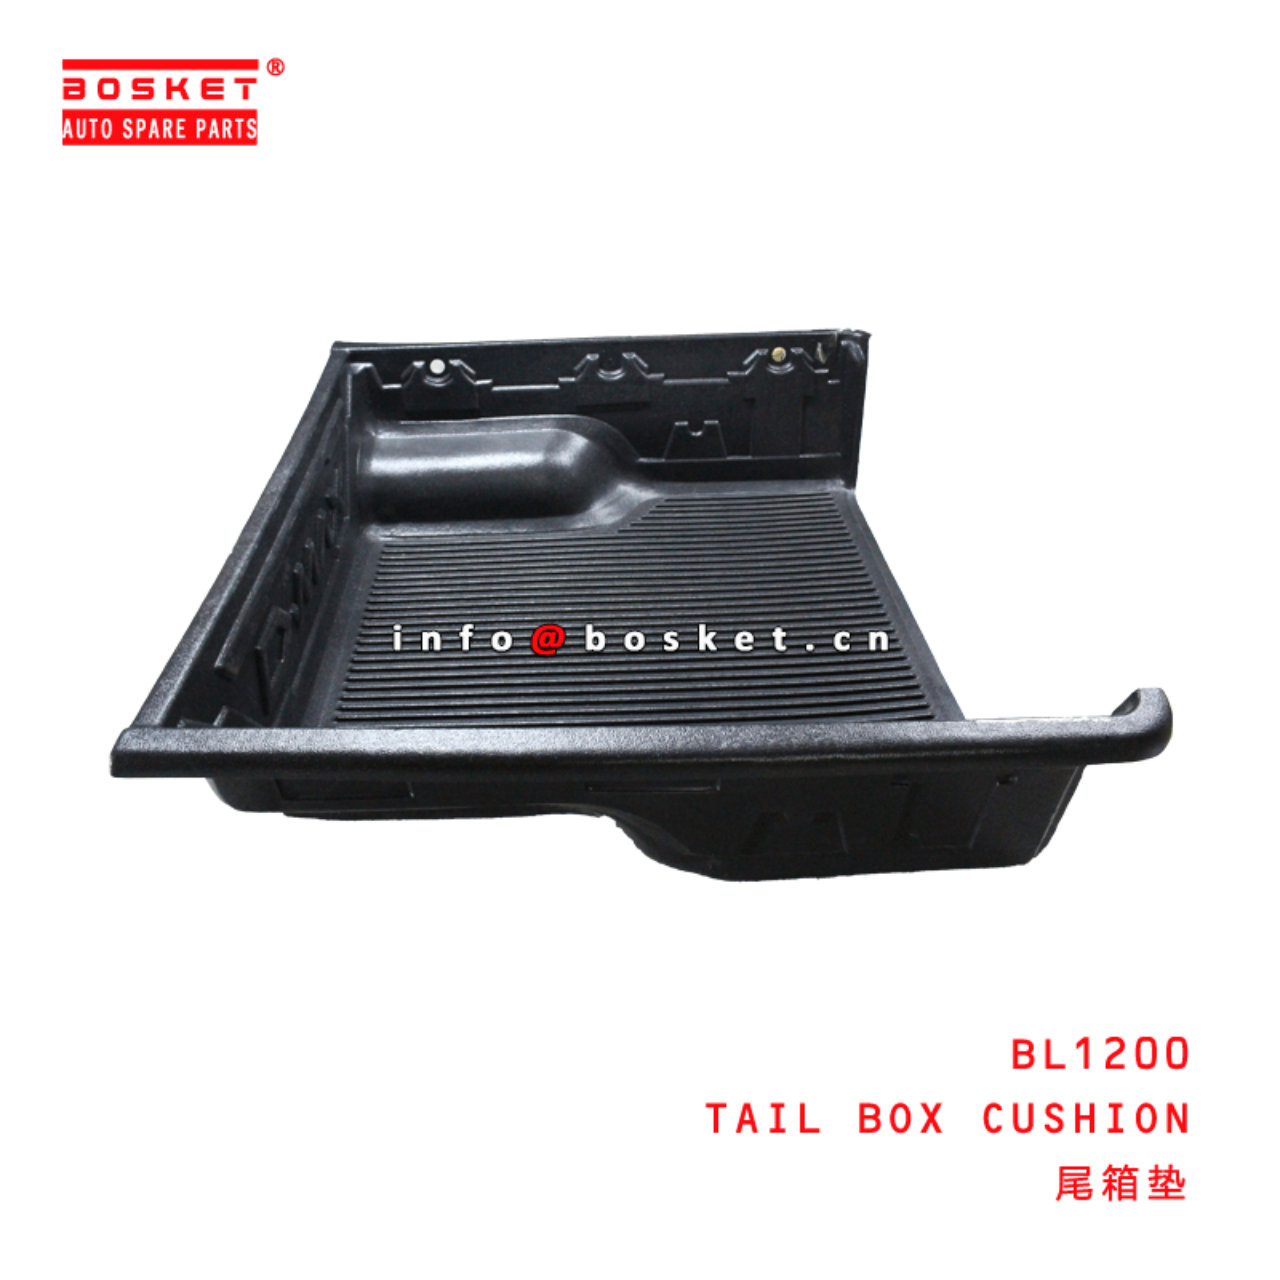  BL1200 Tail Box Cushion Suitable for ISUZU D-MAX 2017